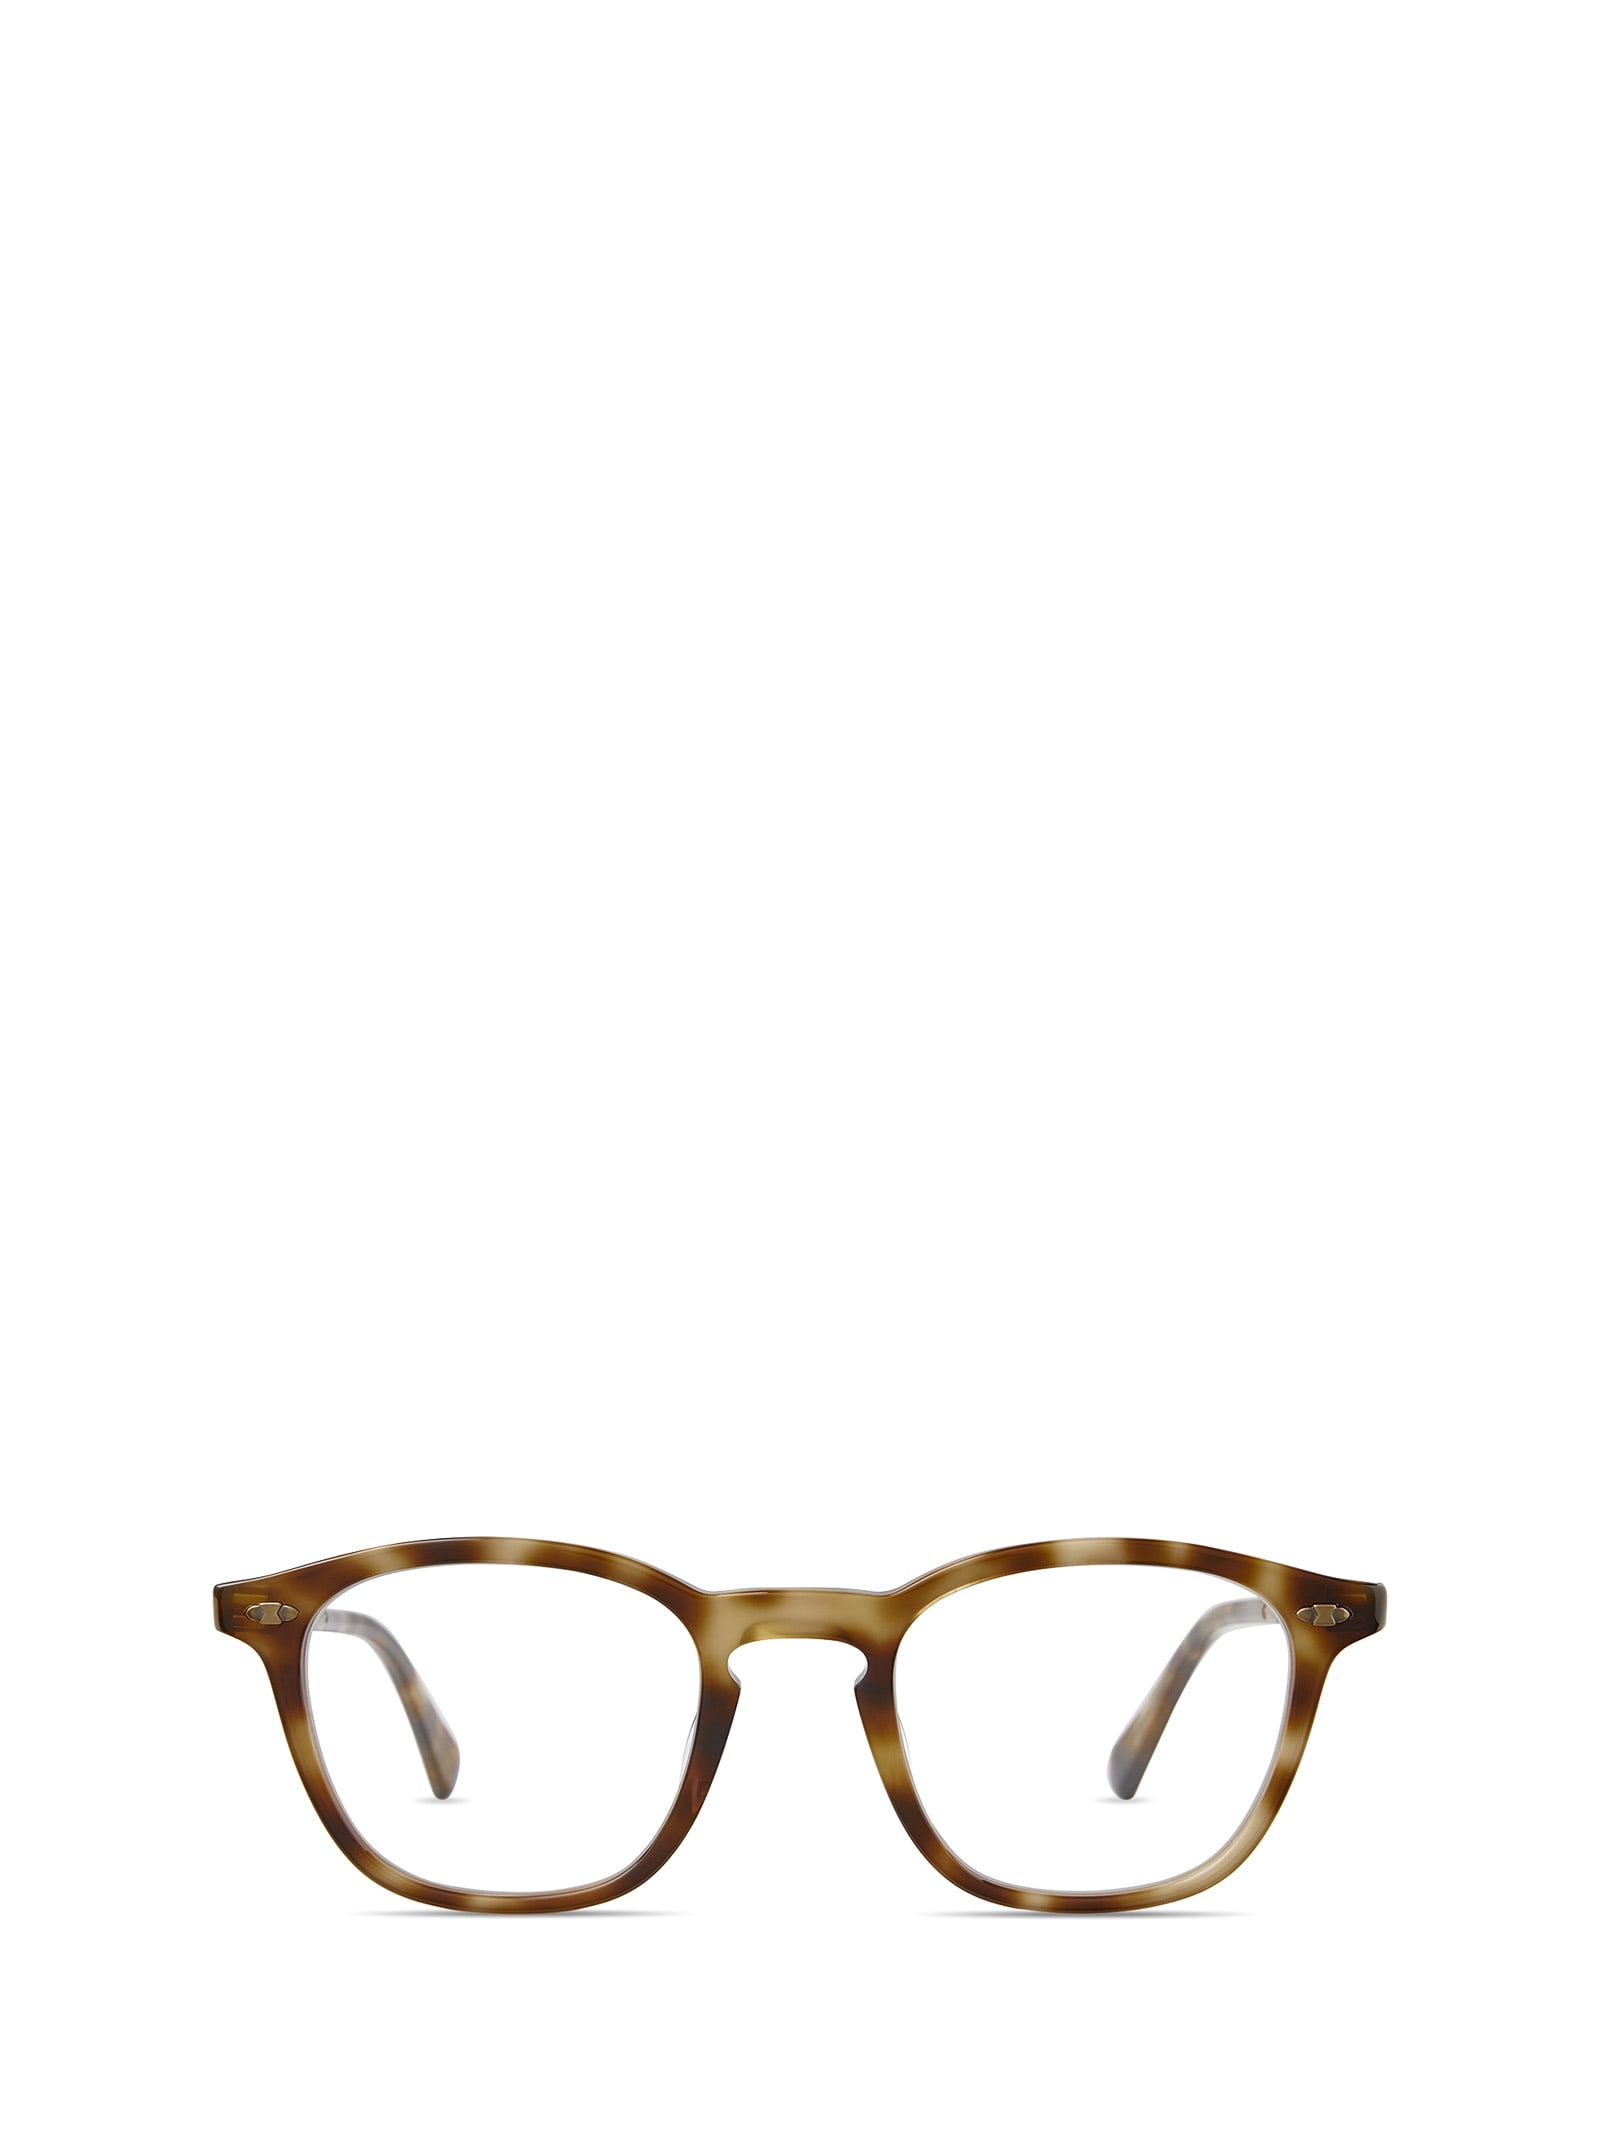 Mr Leight Devon C Calico Tortoise-antique Gold Glasses